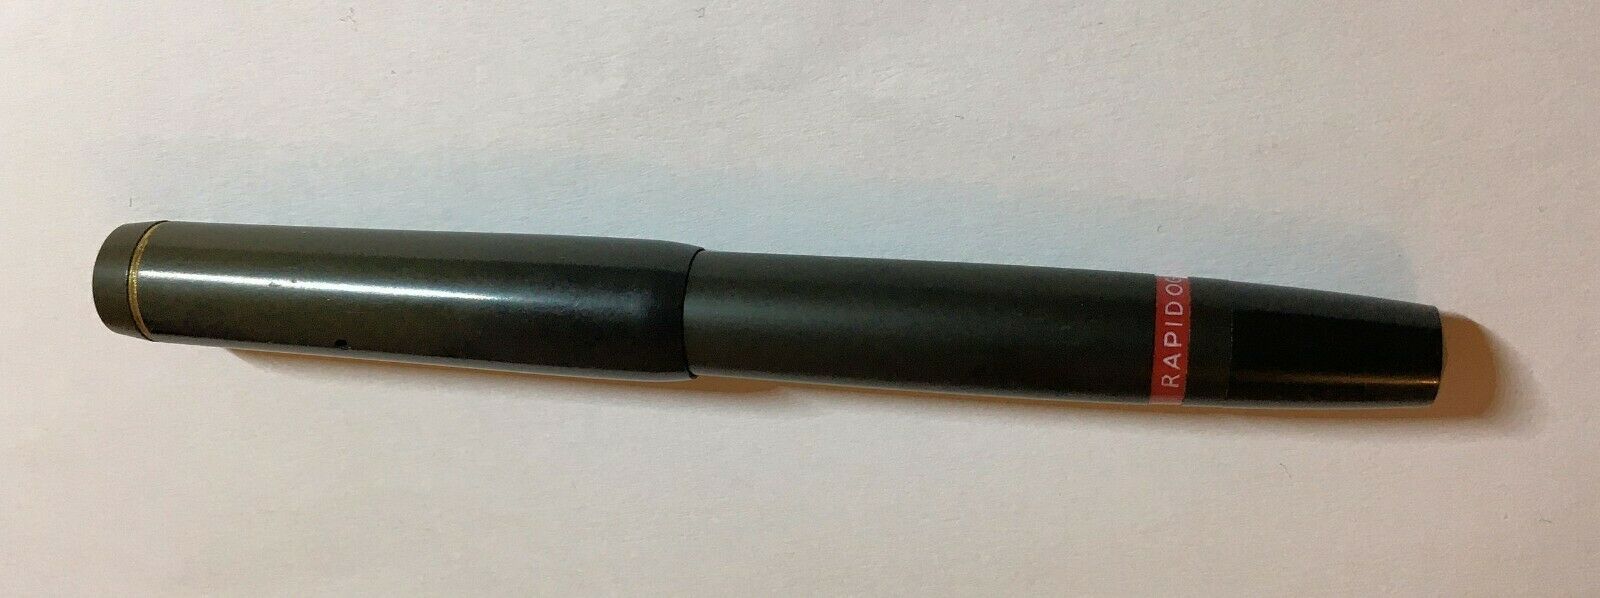 1950s Rotring Rapidograph A No1 No 1 piston filler pen - $54.00